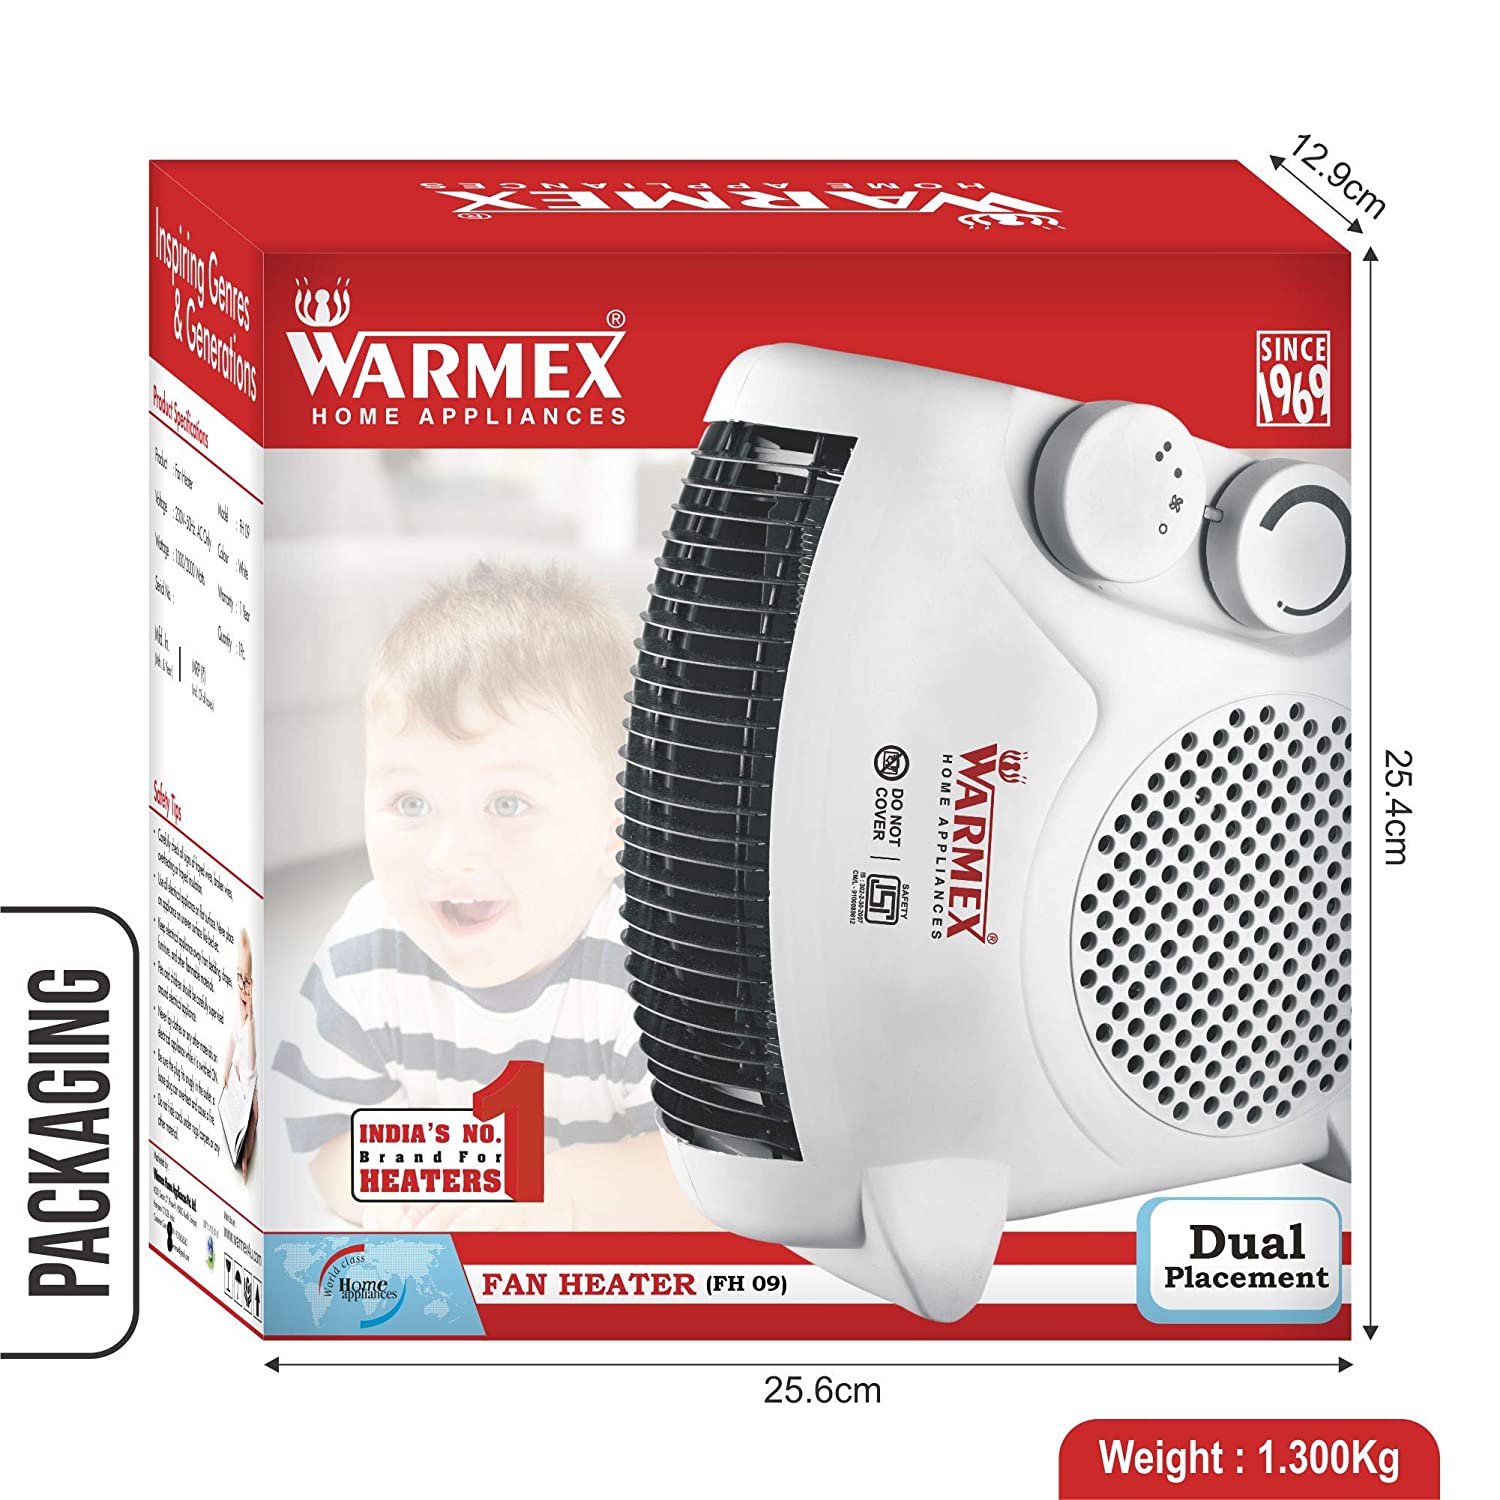 Warmex 1000 वॉट फैन हीटर (FH 09) डुअल प्लेसमेंट के साथ, रंग: सफ़ेद